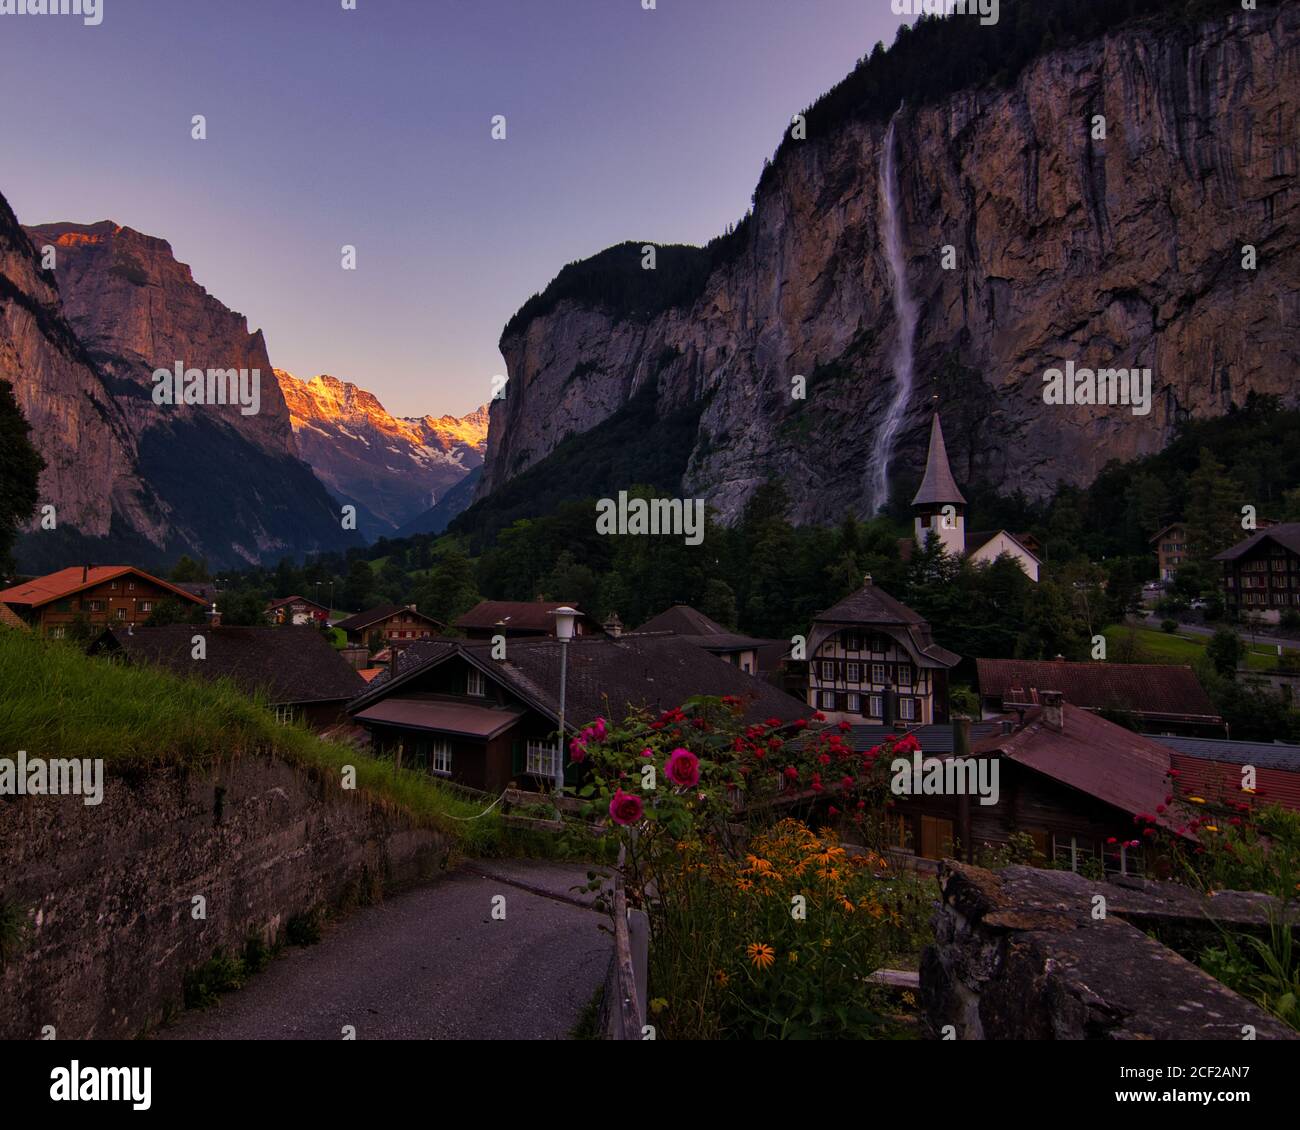 Lauterbrunnen, l'un des plus beaux endroits à visiter en Suisse. Photo de voyage authentique pour la destination de voyage. Banque D'Images